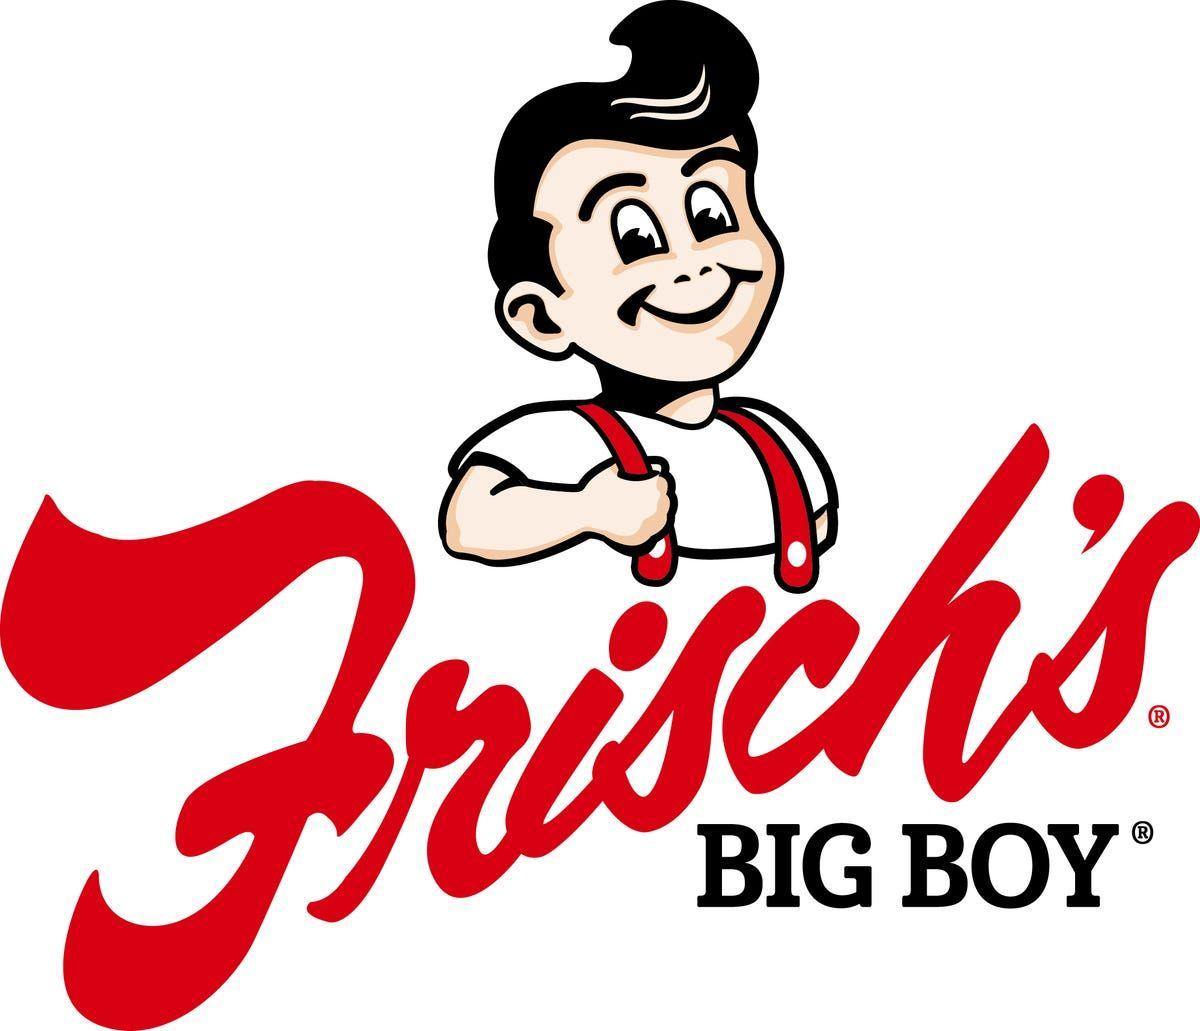 Frisch's Logo - Frisch's makeover goes beyond Big Boy